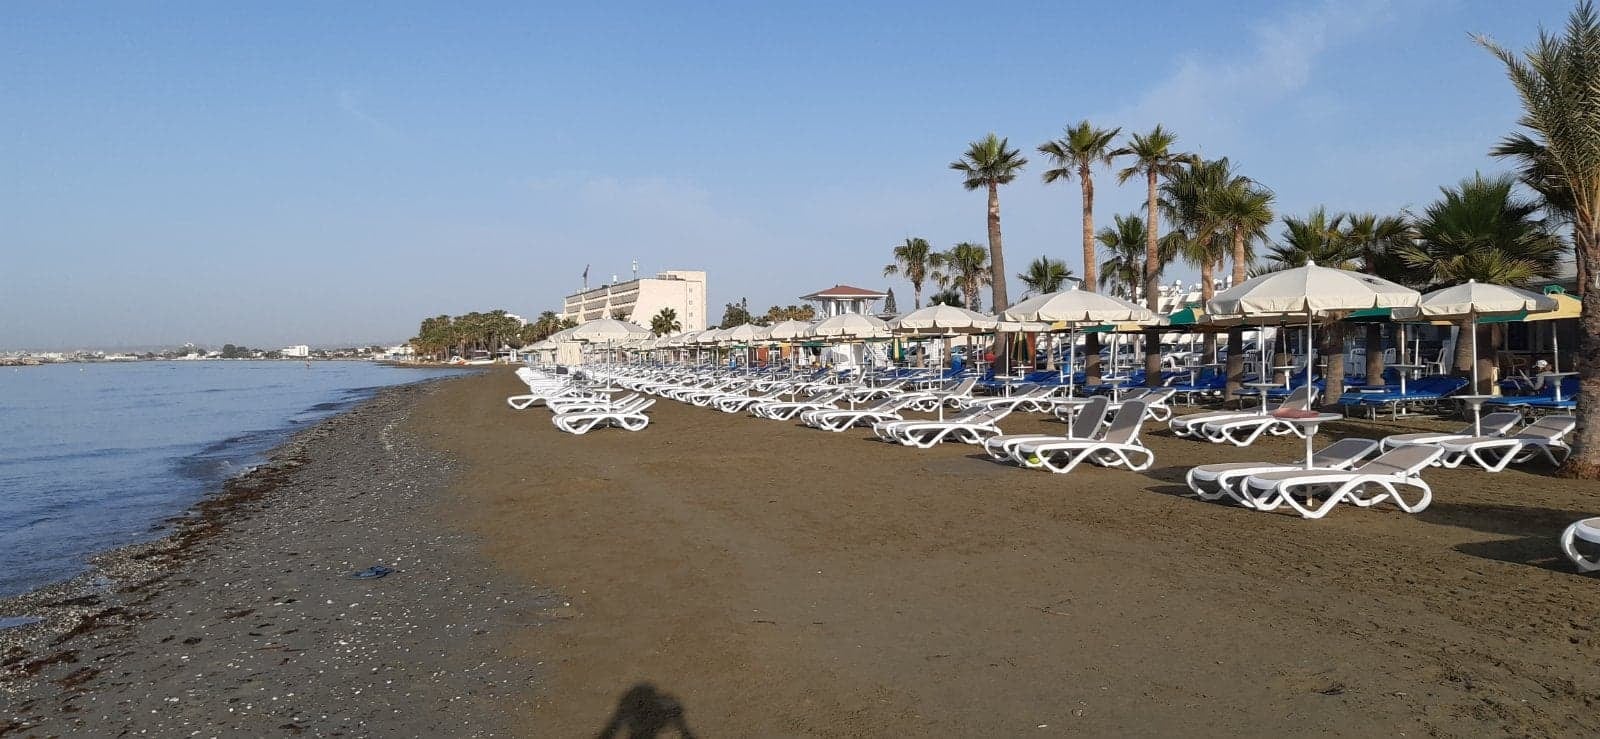 Αναβαθμίζεται η παραλία "Γιαννάδες" στη Βορόκληνη - Larnakaonline.com.cy